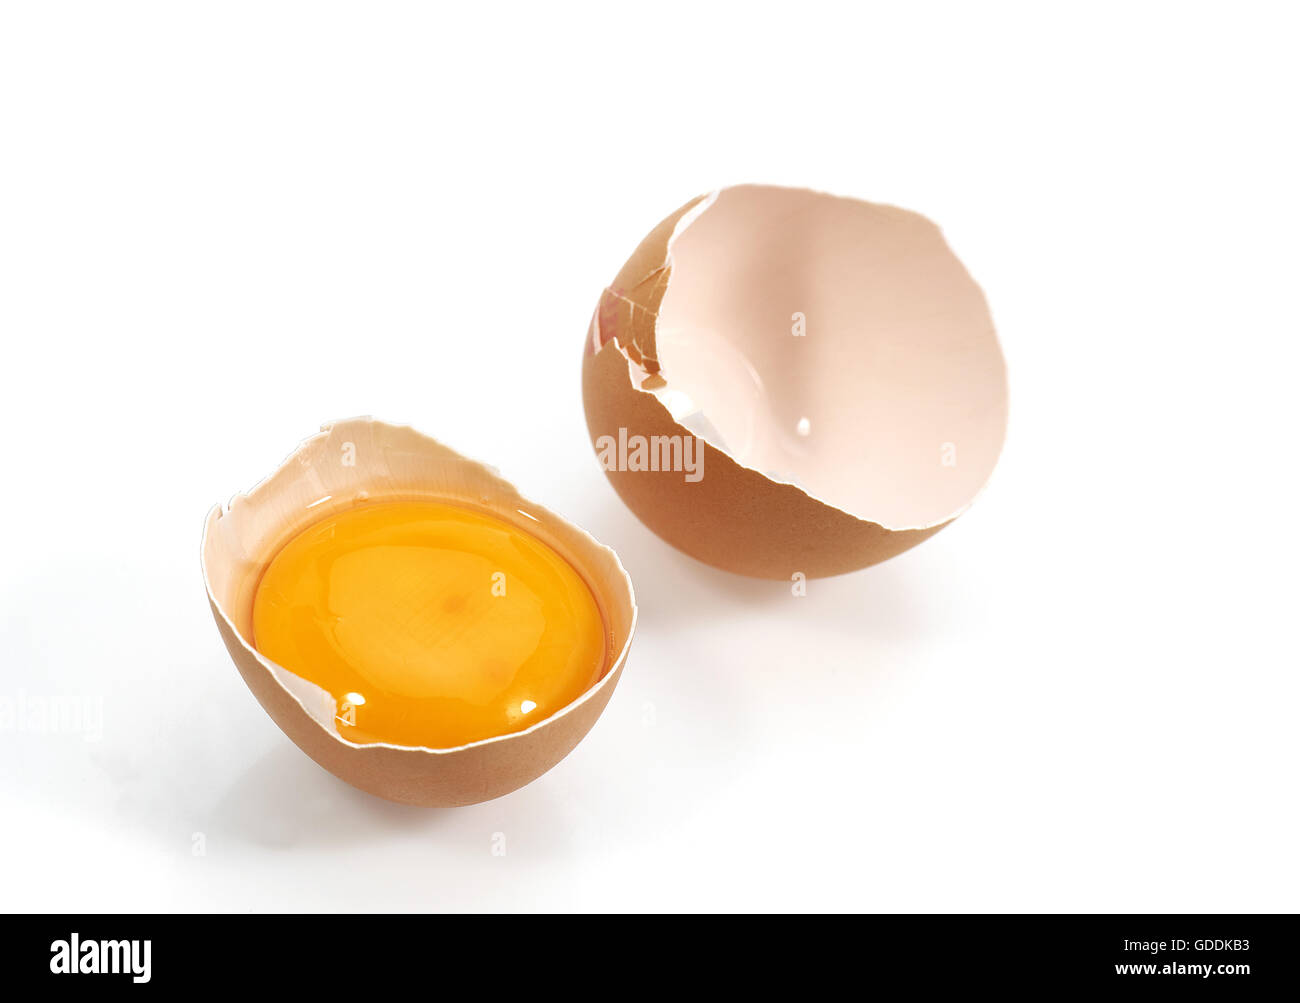 Uovo di pollo che mostra il tuorlo contro uno sfondo bianco Foto Stock